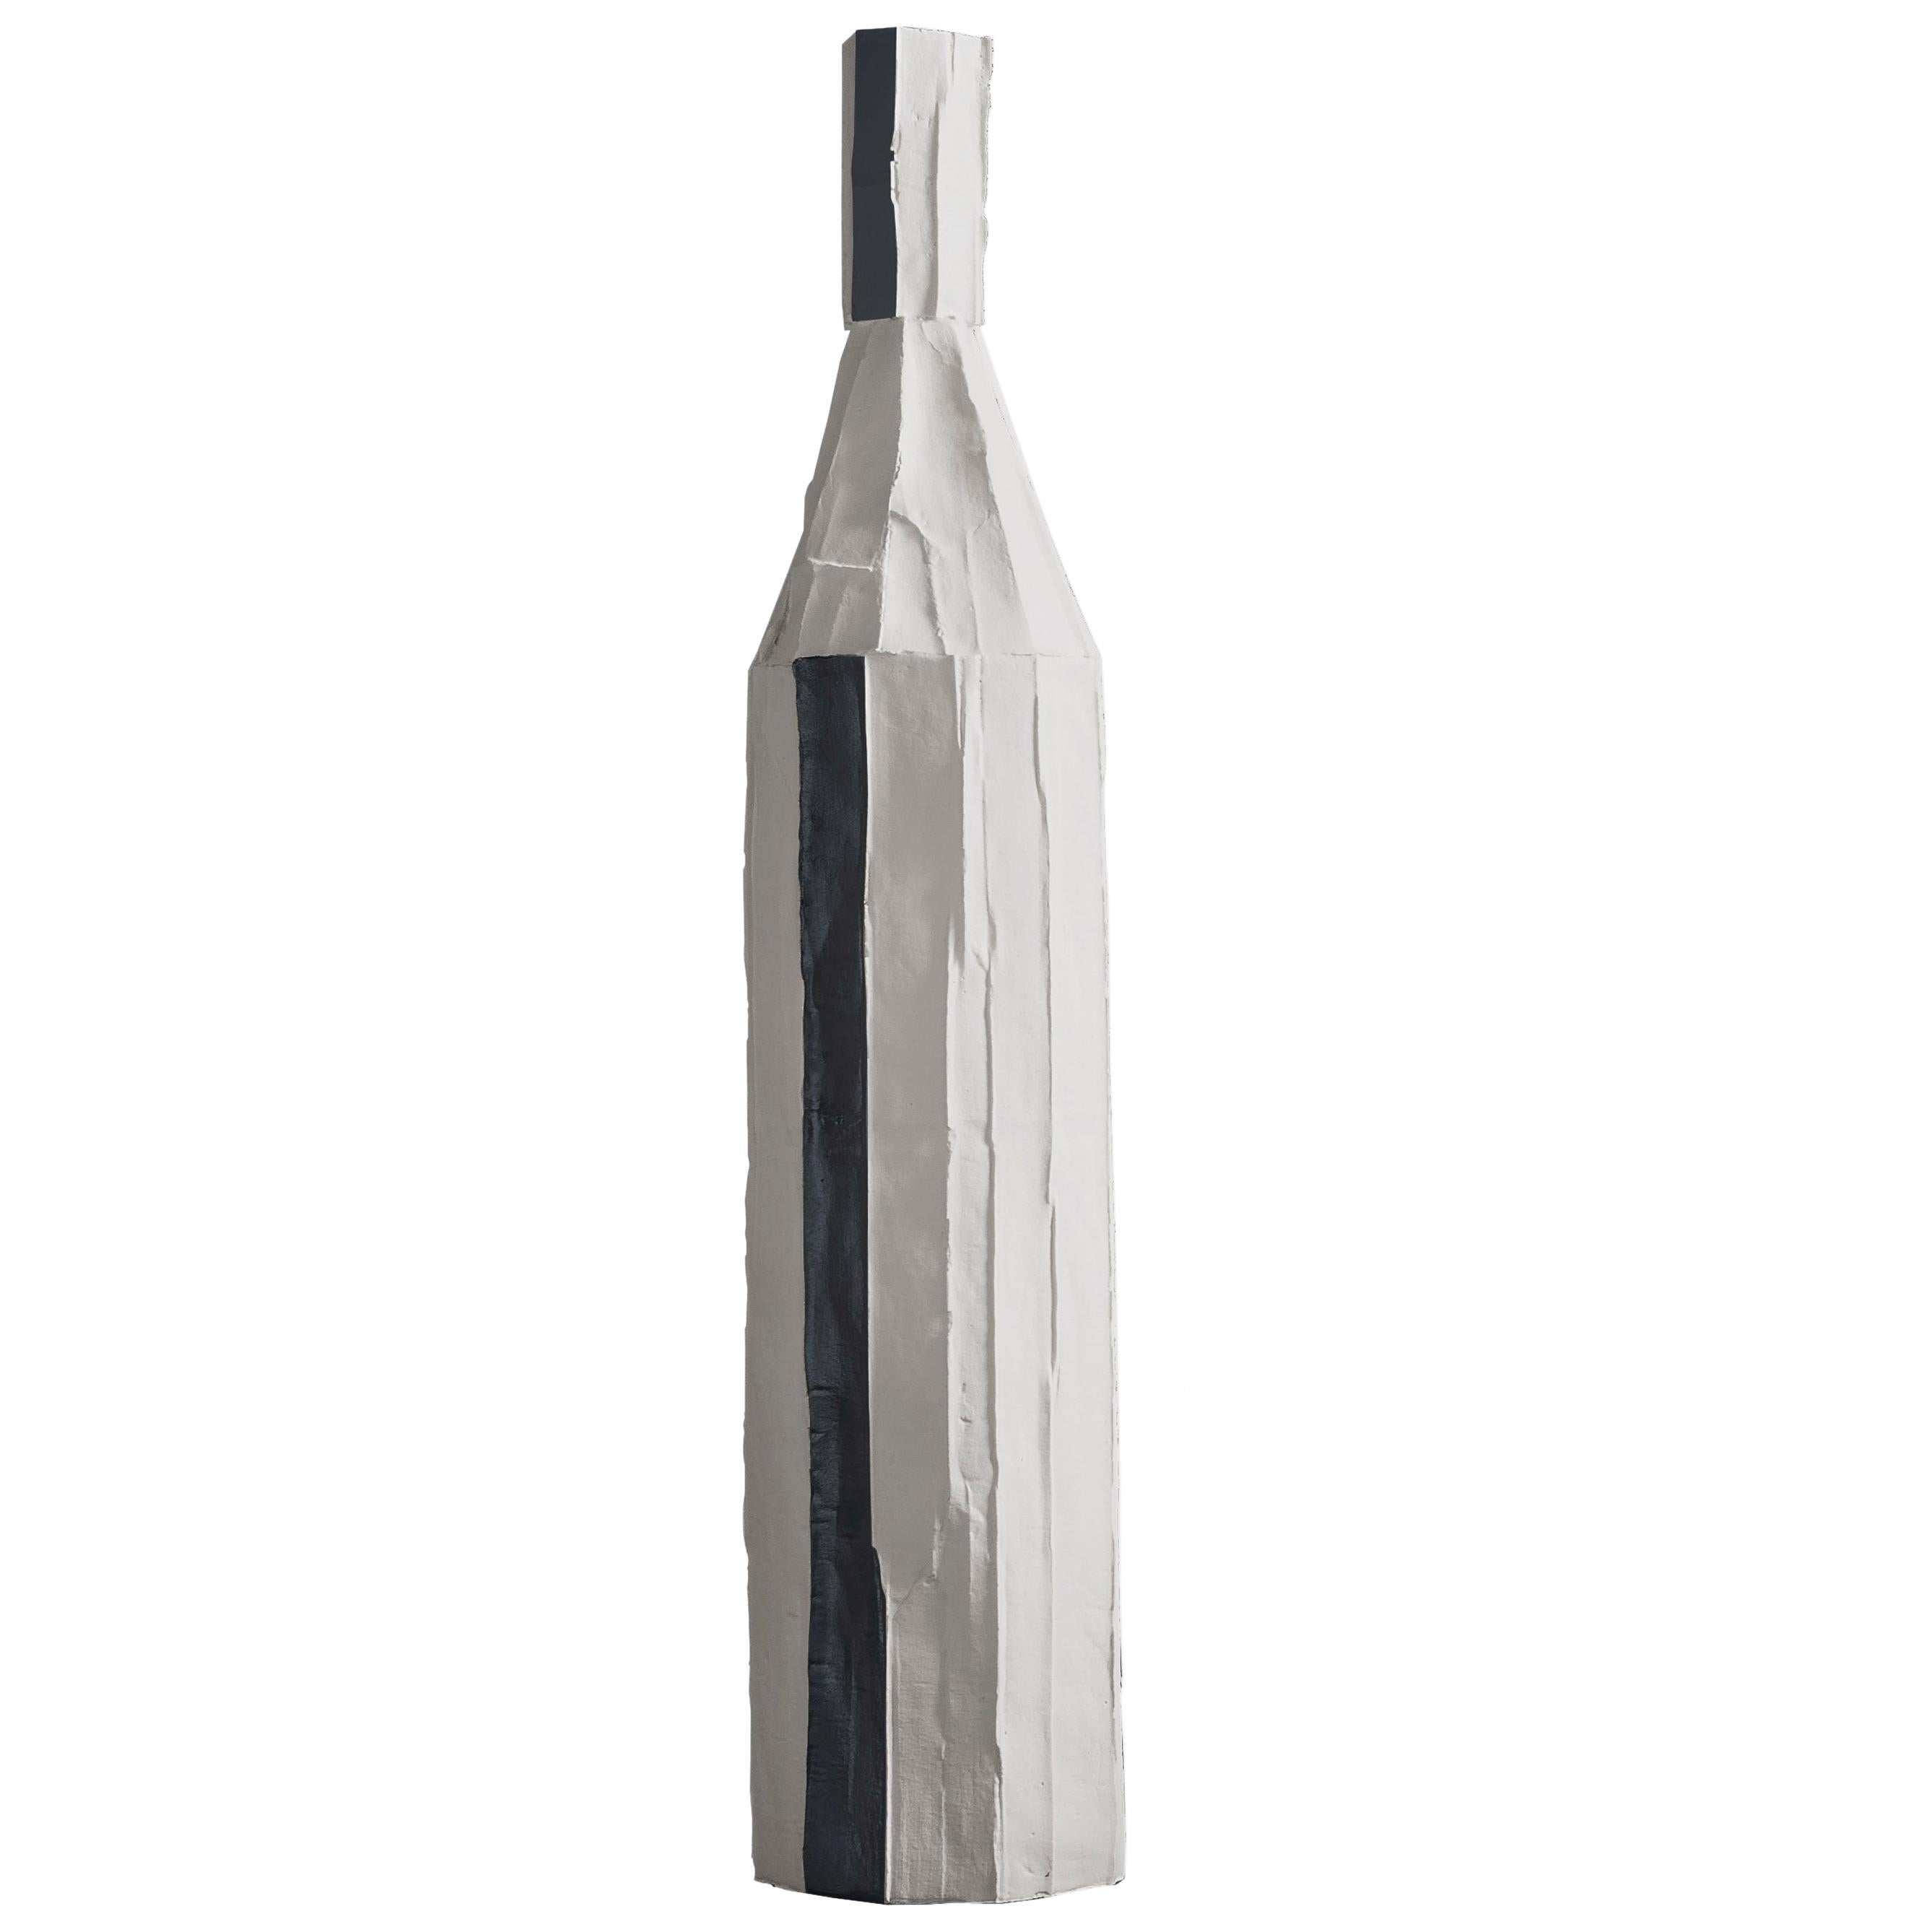 Contemporary Ceramic Decorative Bottle Corteccia Texture White and Black Insert